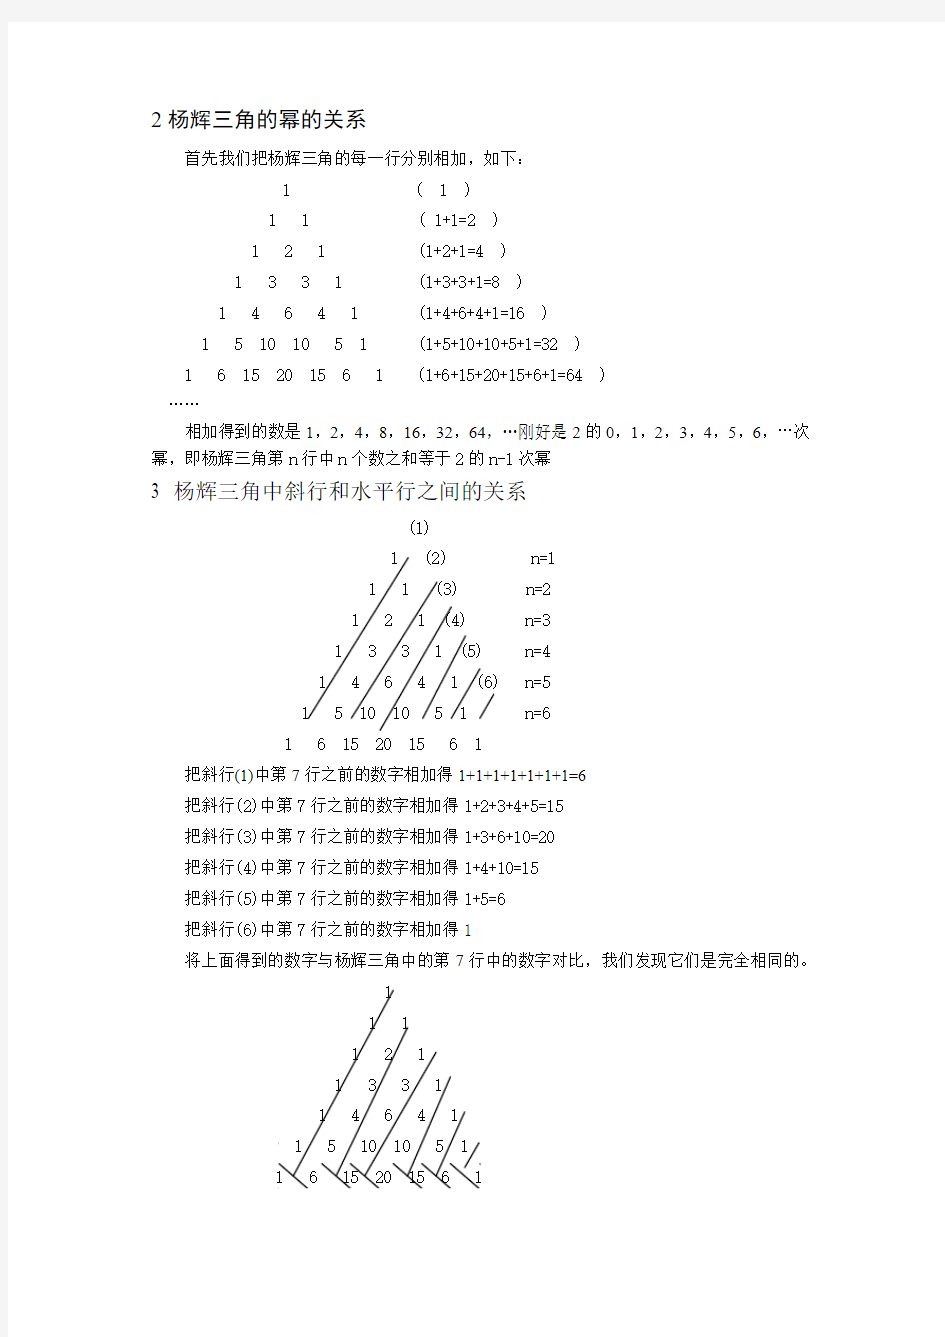 最新杨辉三角的规律以及推导公式